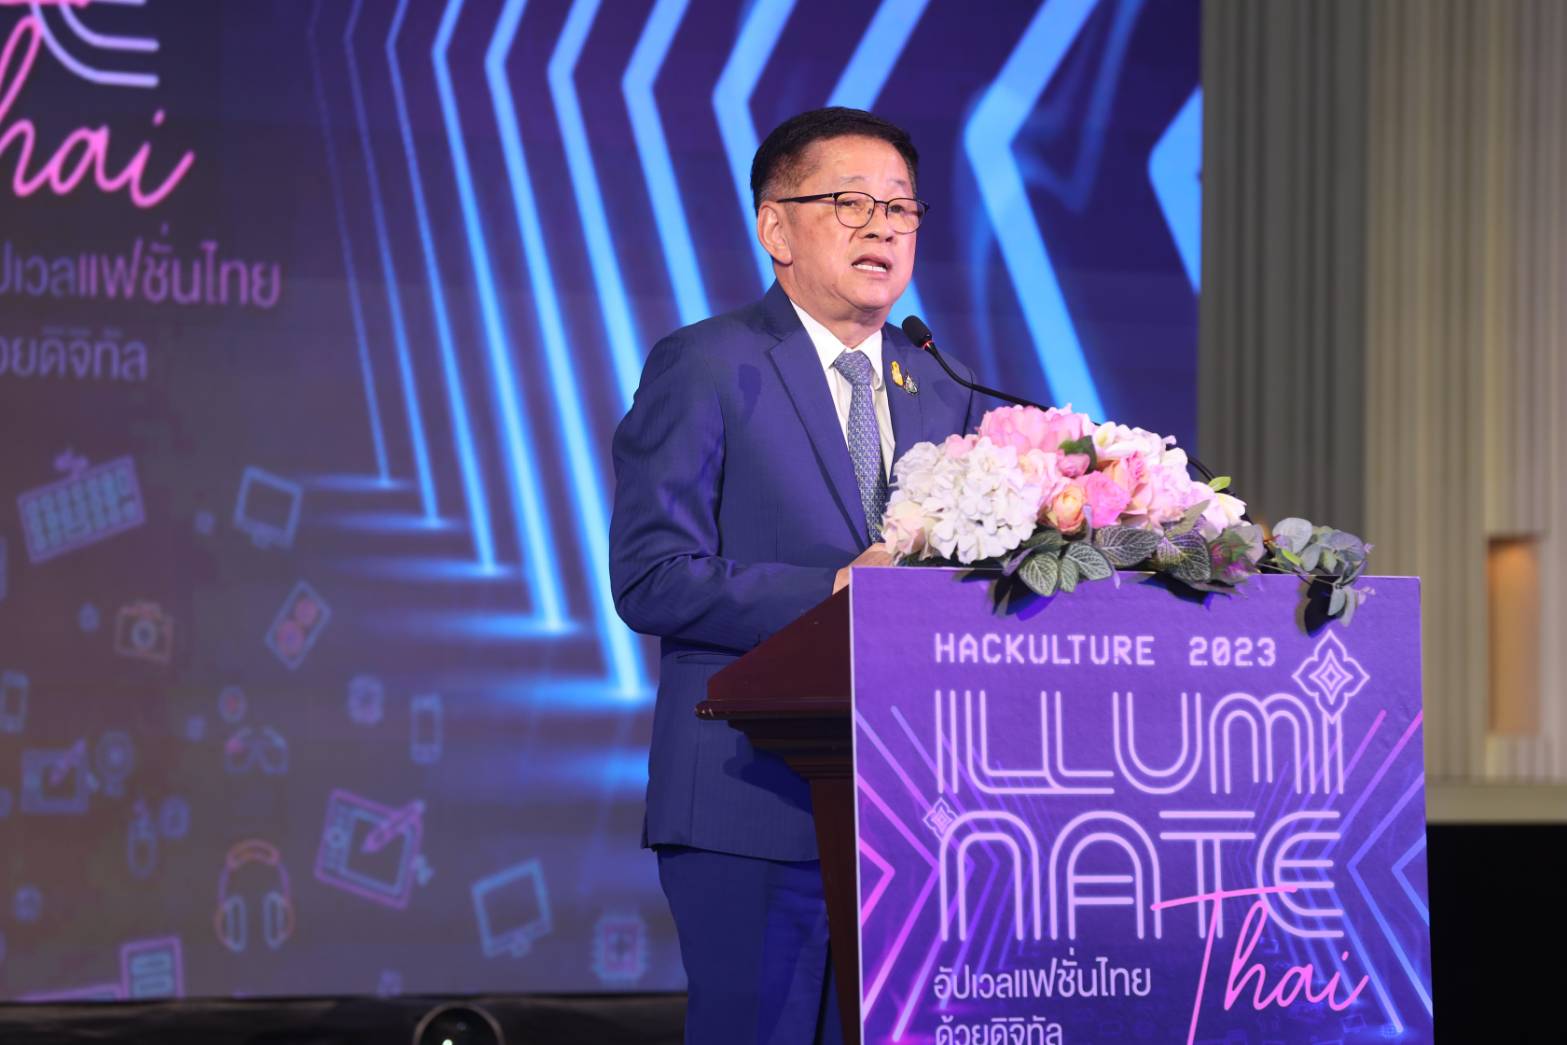 รมว.ดีอี มอบรางวัล “Hackulture 2023 Illuminate Thai” นำดิจิทัลยกระดับอุตสาหกรรมแฟชั่นไทยสู่ระดับสากล มุ่งสร้าง Soft Power ของไทย